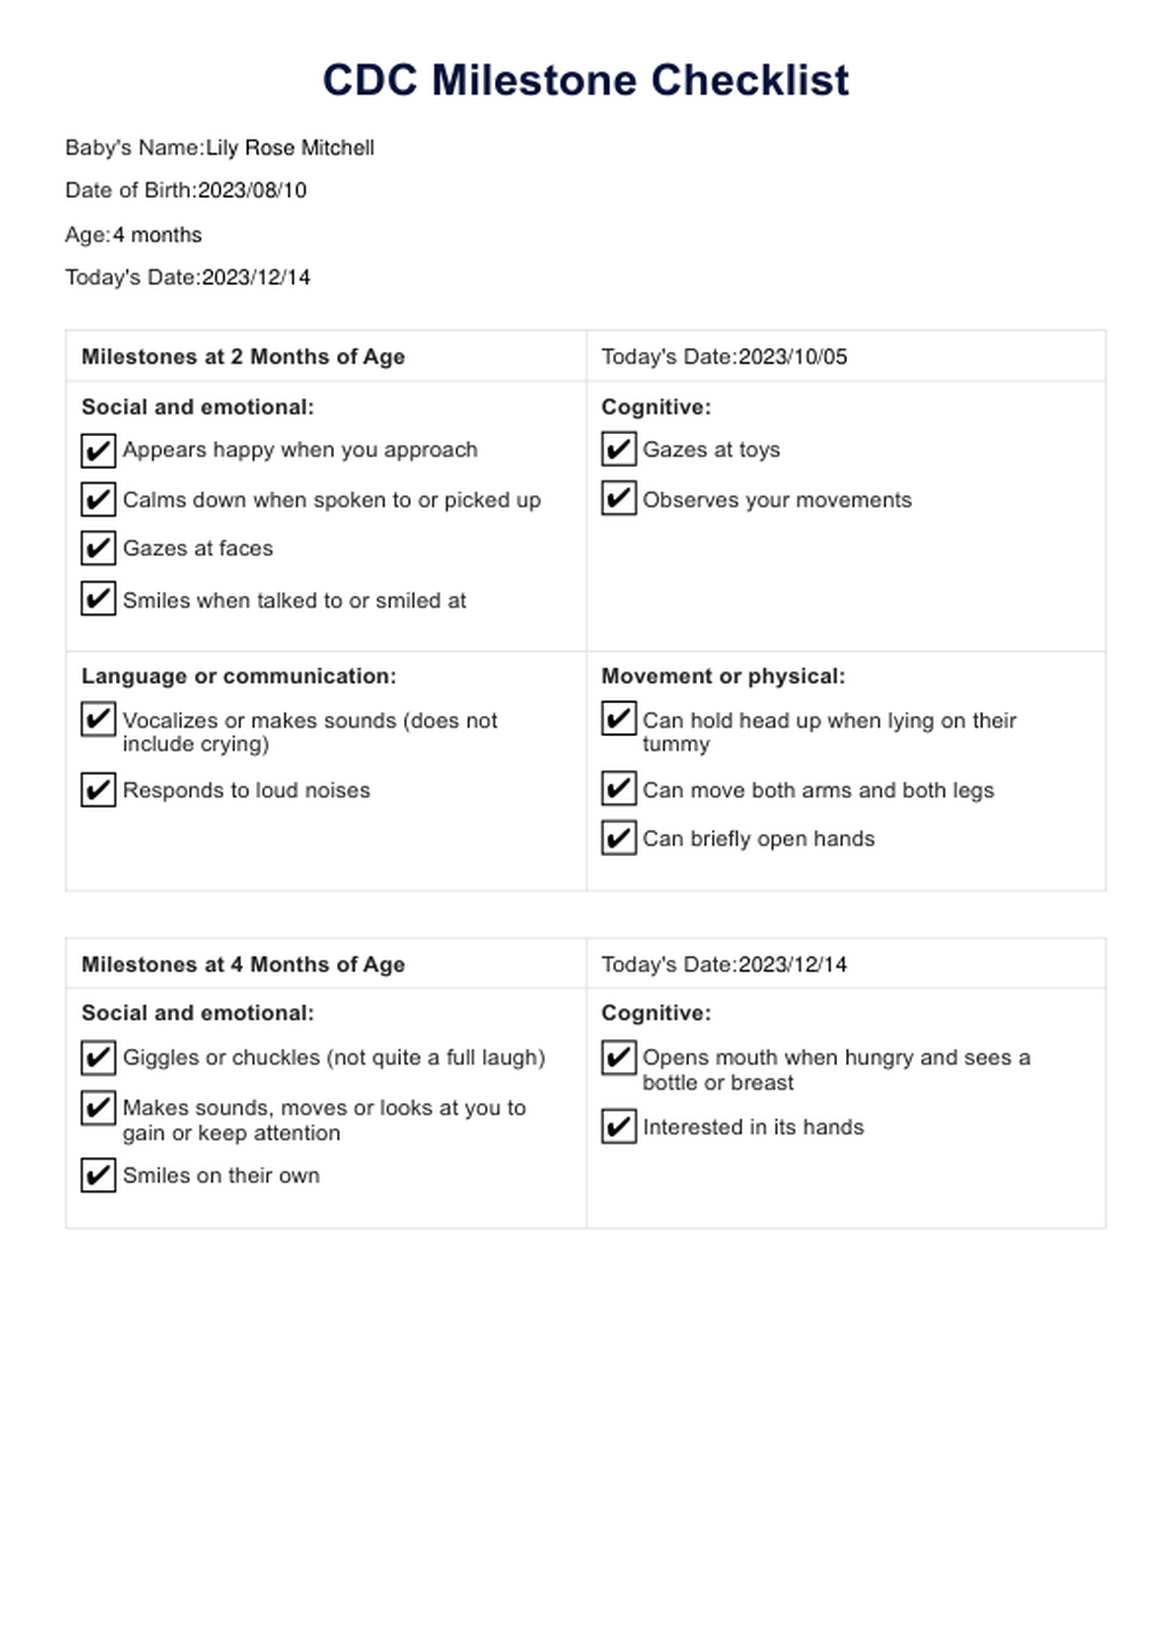 CDC Milestone Checklist Template PDF Example